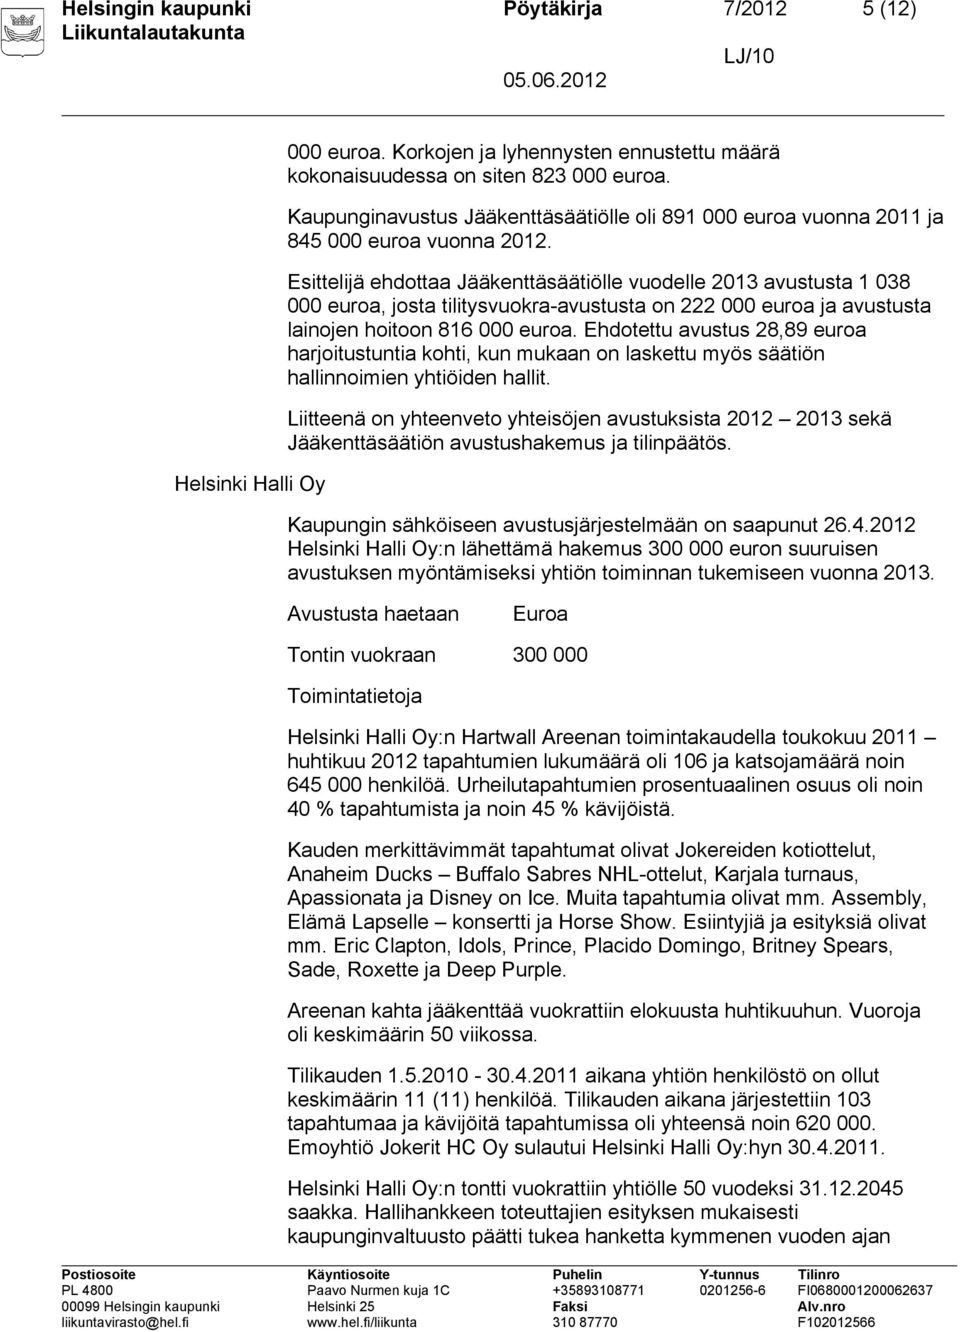 Esittelijä ehdottaa Jääkenttäsäätiölle vuodelle 2013 avustusta 1 038 000 euroa, josta tilitysvuokra-avustusta on 222 000 euroa ja avustusta lainojen hoitoon 816 000 euroa.